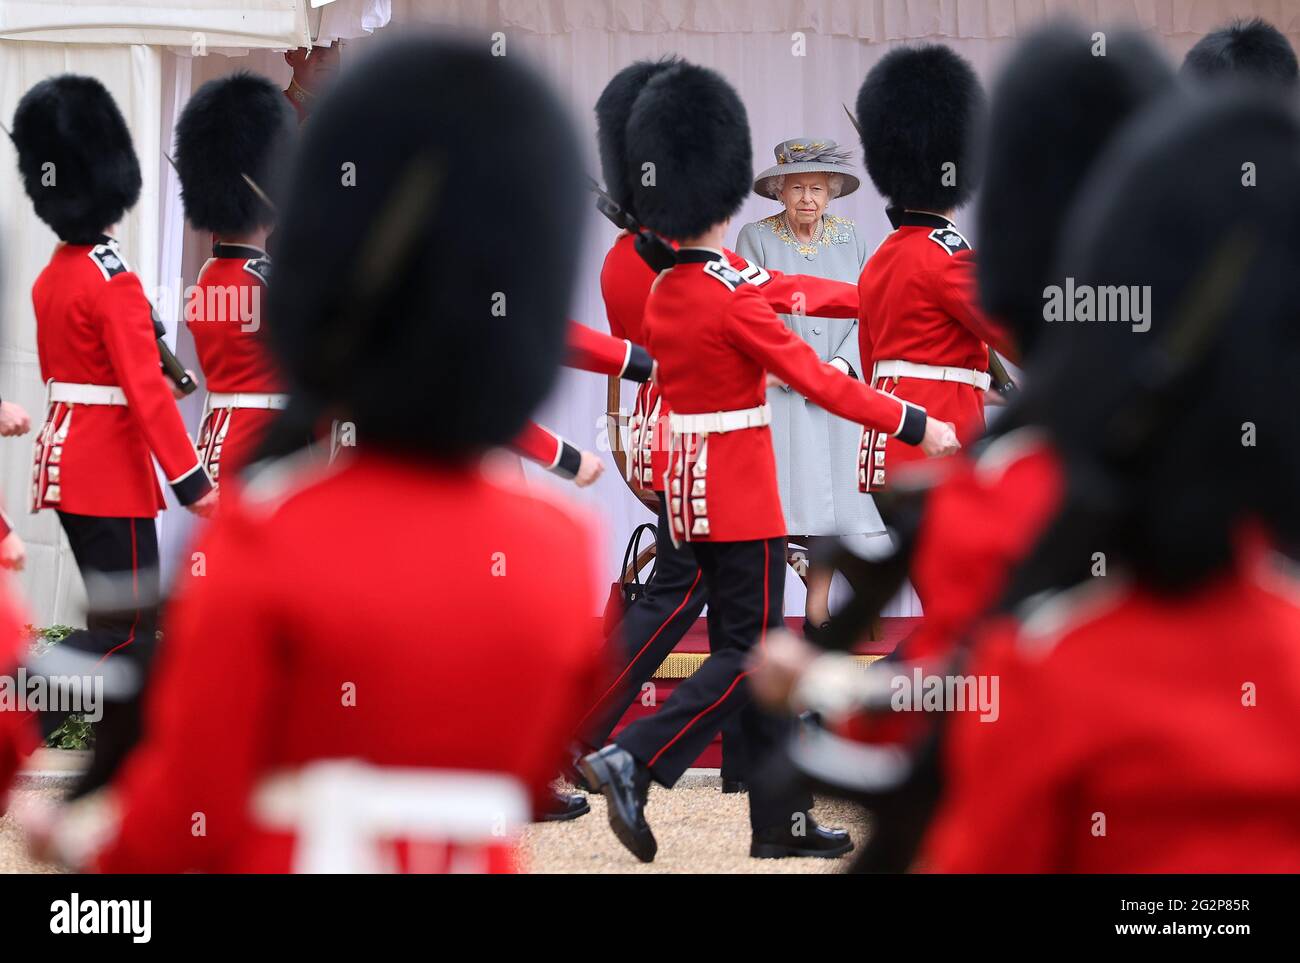 La Regina Elisabetta II durante una cerimonia al Castello di Windsor nel Berkshire per celebrare il suo compleanno ufficiale. Data immagine: Sabato 12 giugno 2021. Foto Stock